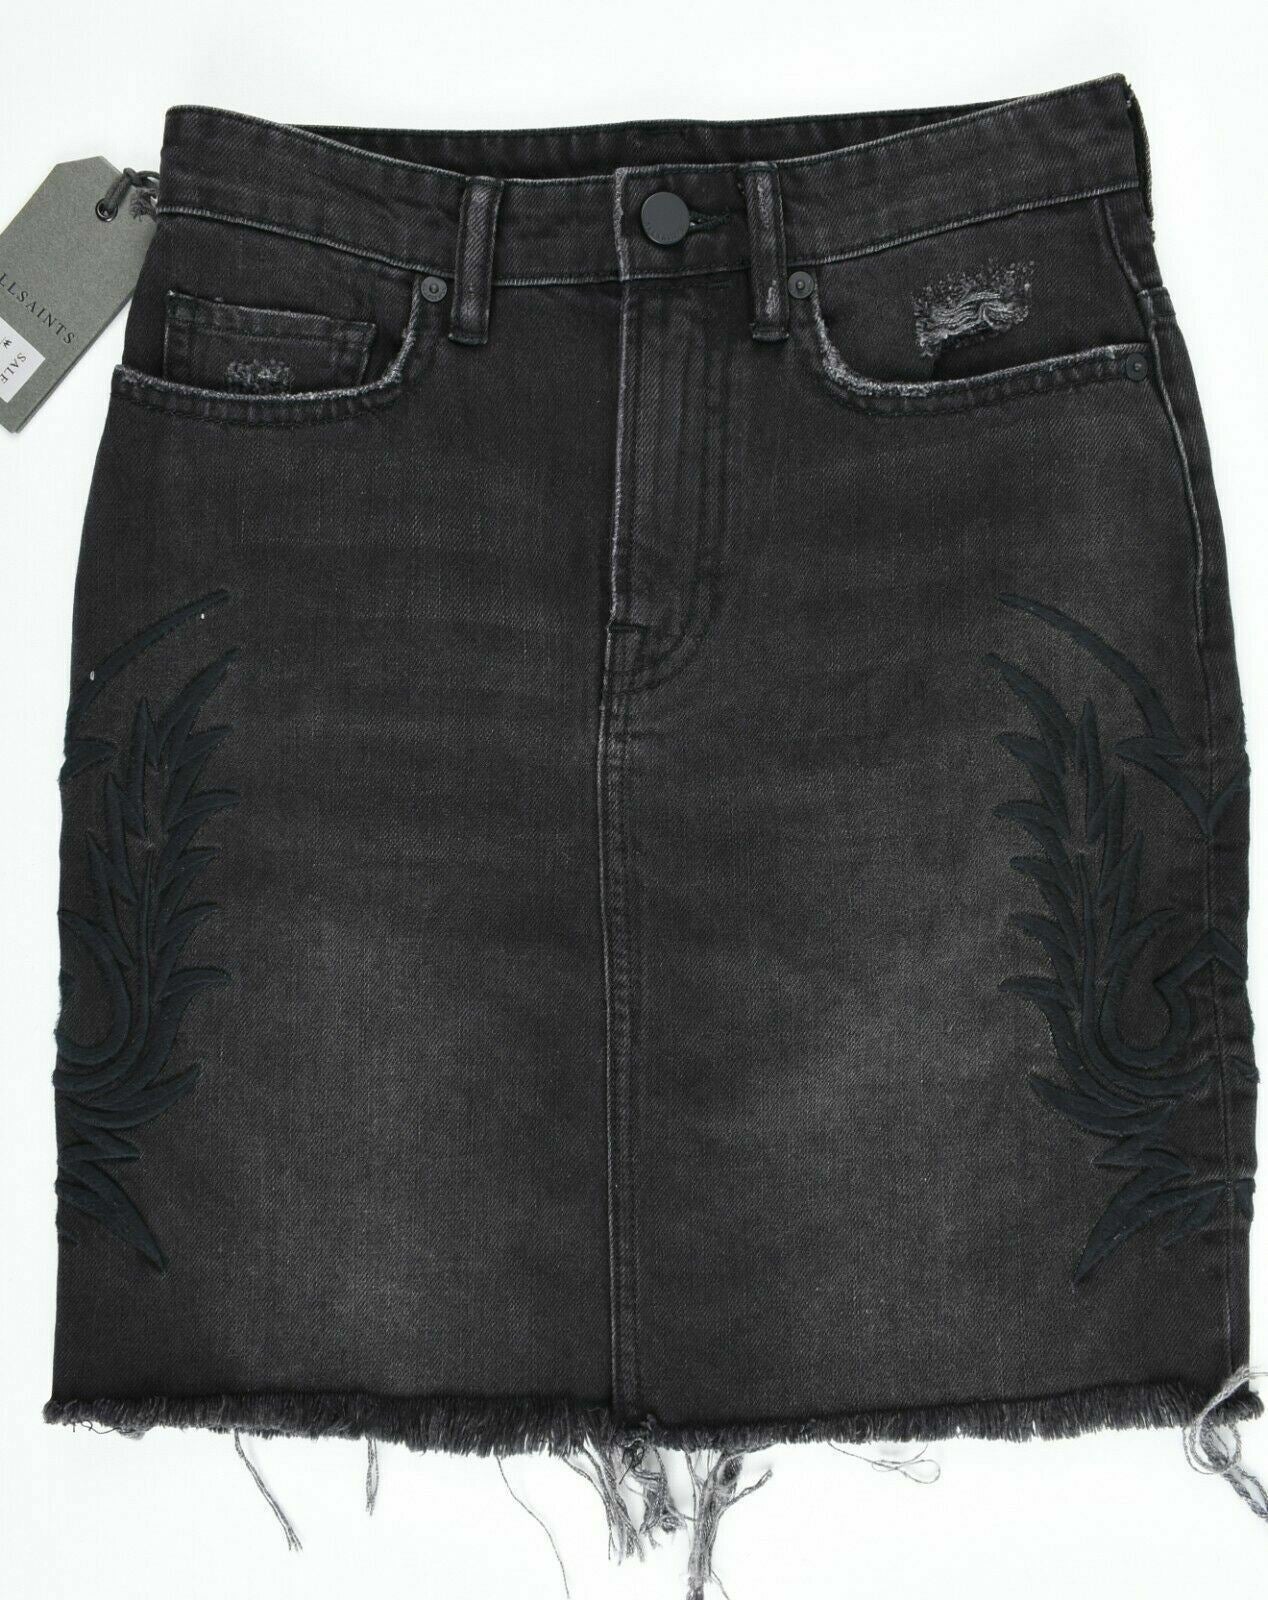 ALLSAINTS Women's PHILLY Embroidered Denim Skirt, Black, size UK 4